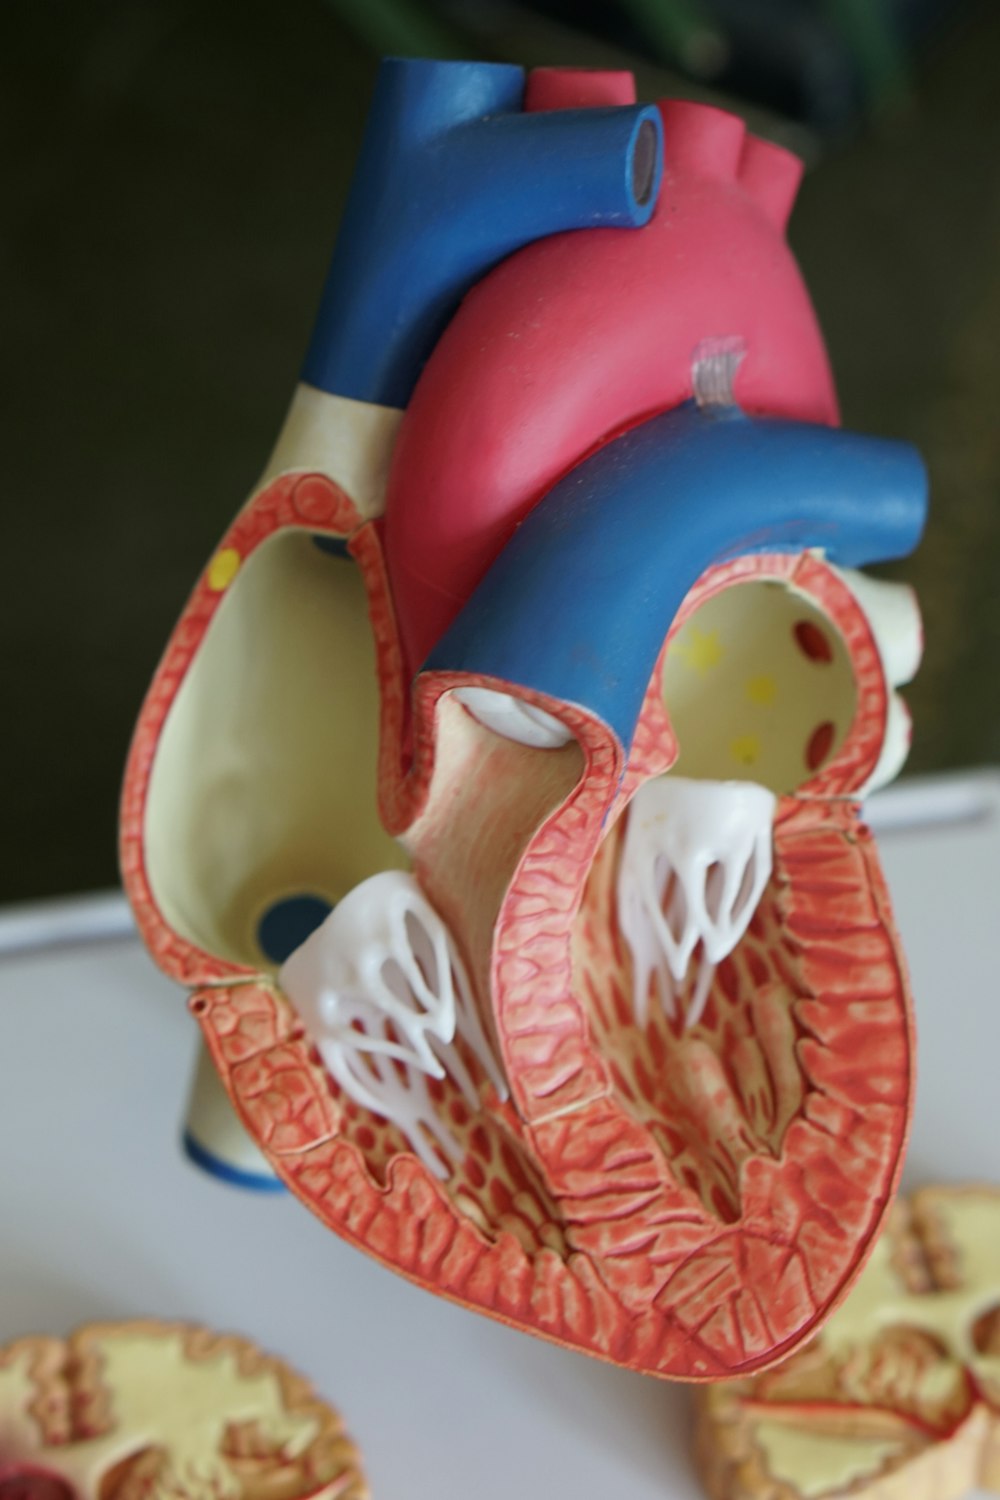 modello anatomico in scala di cuore umano